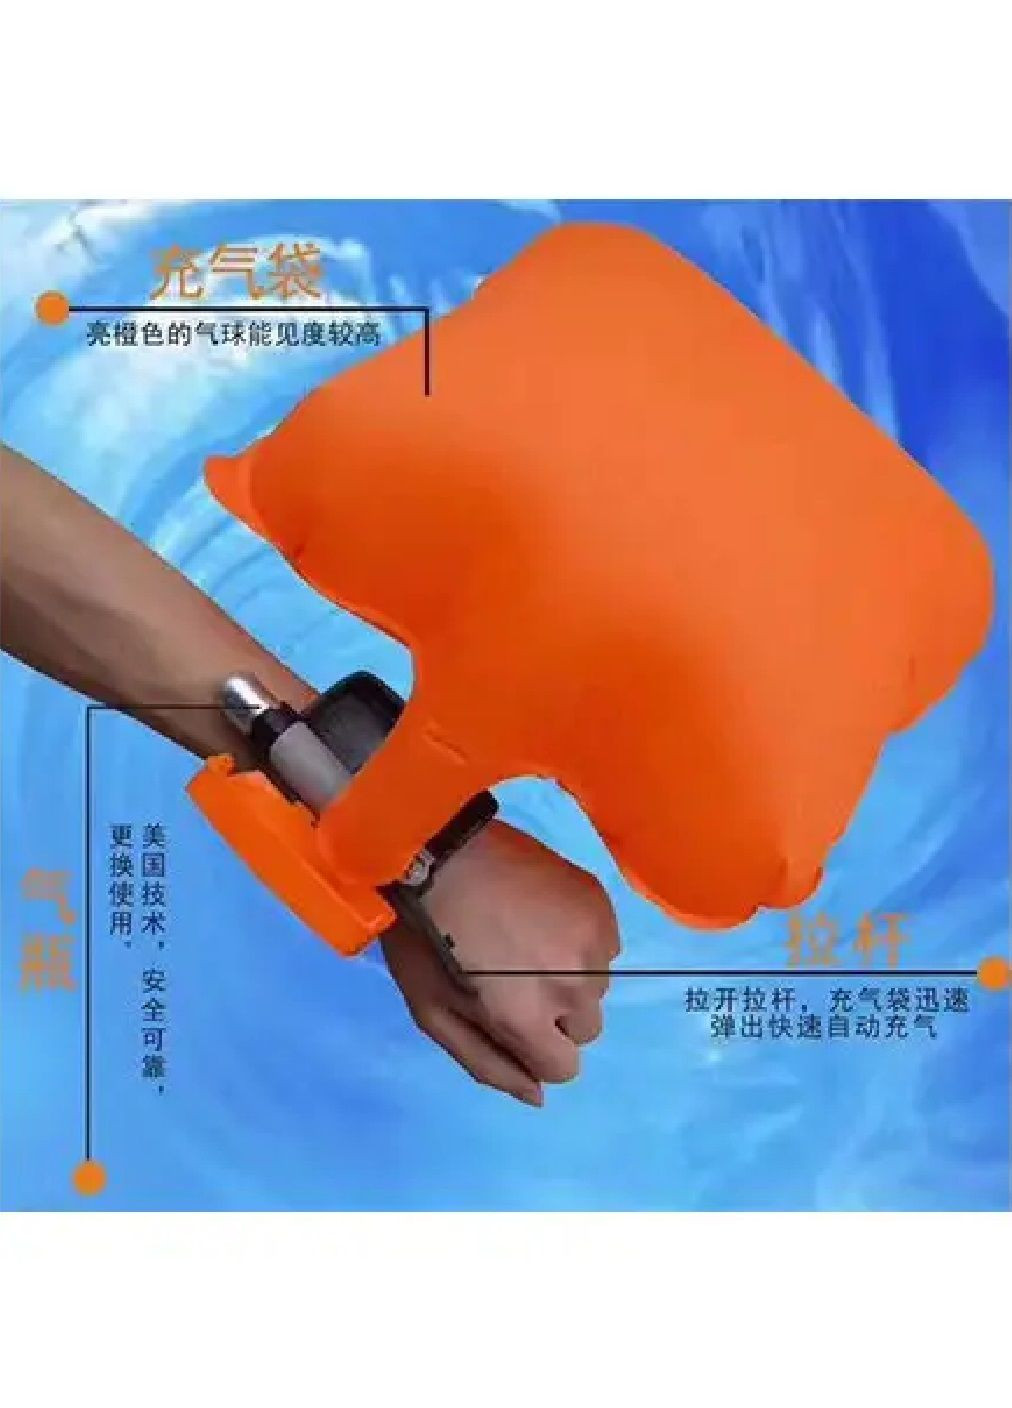 Страховочный спасательный браслет с надувной подушкой безопасности для детей и взрослых 29х8х3.2 см (476573-Prob) Unbranded (284667327)